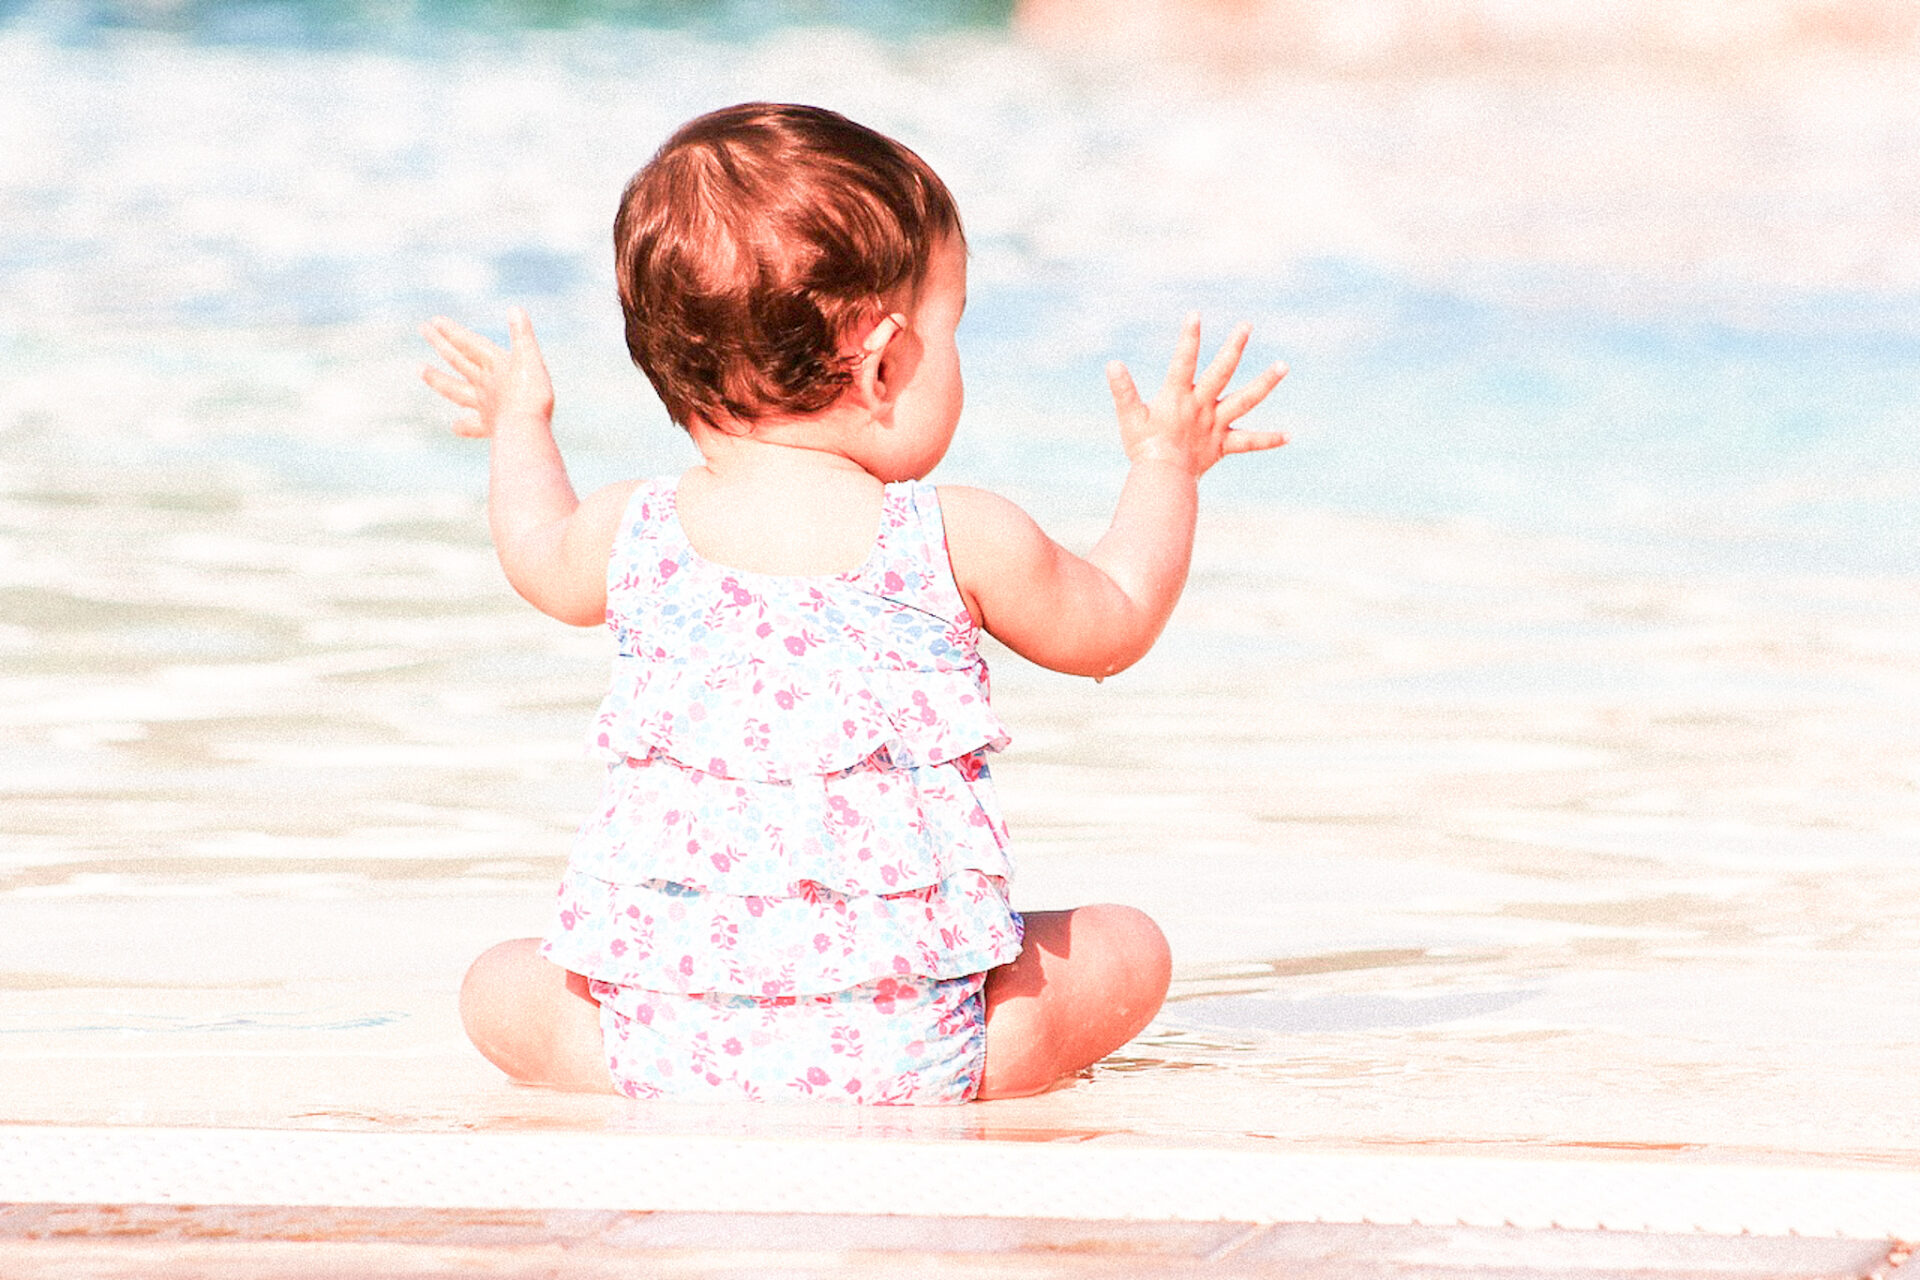 Bébé nageur : Les joies de l’eau